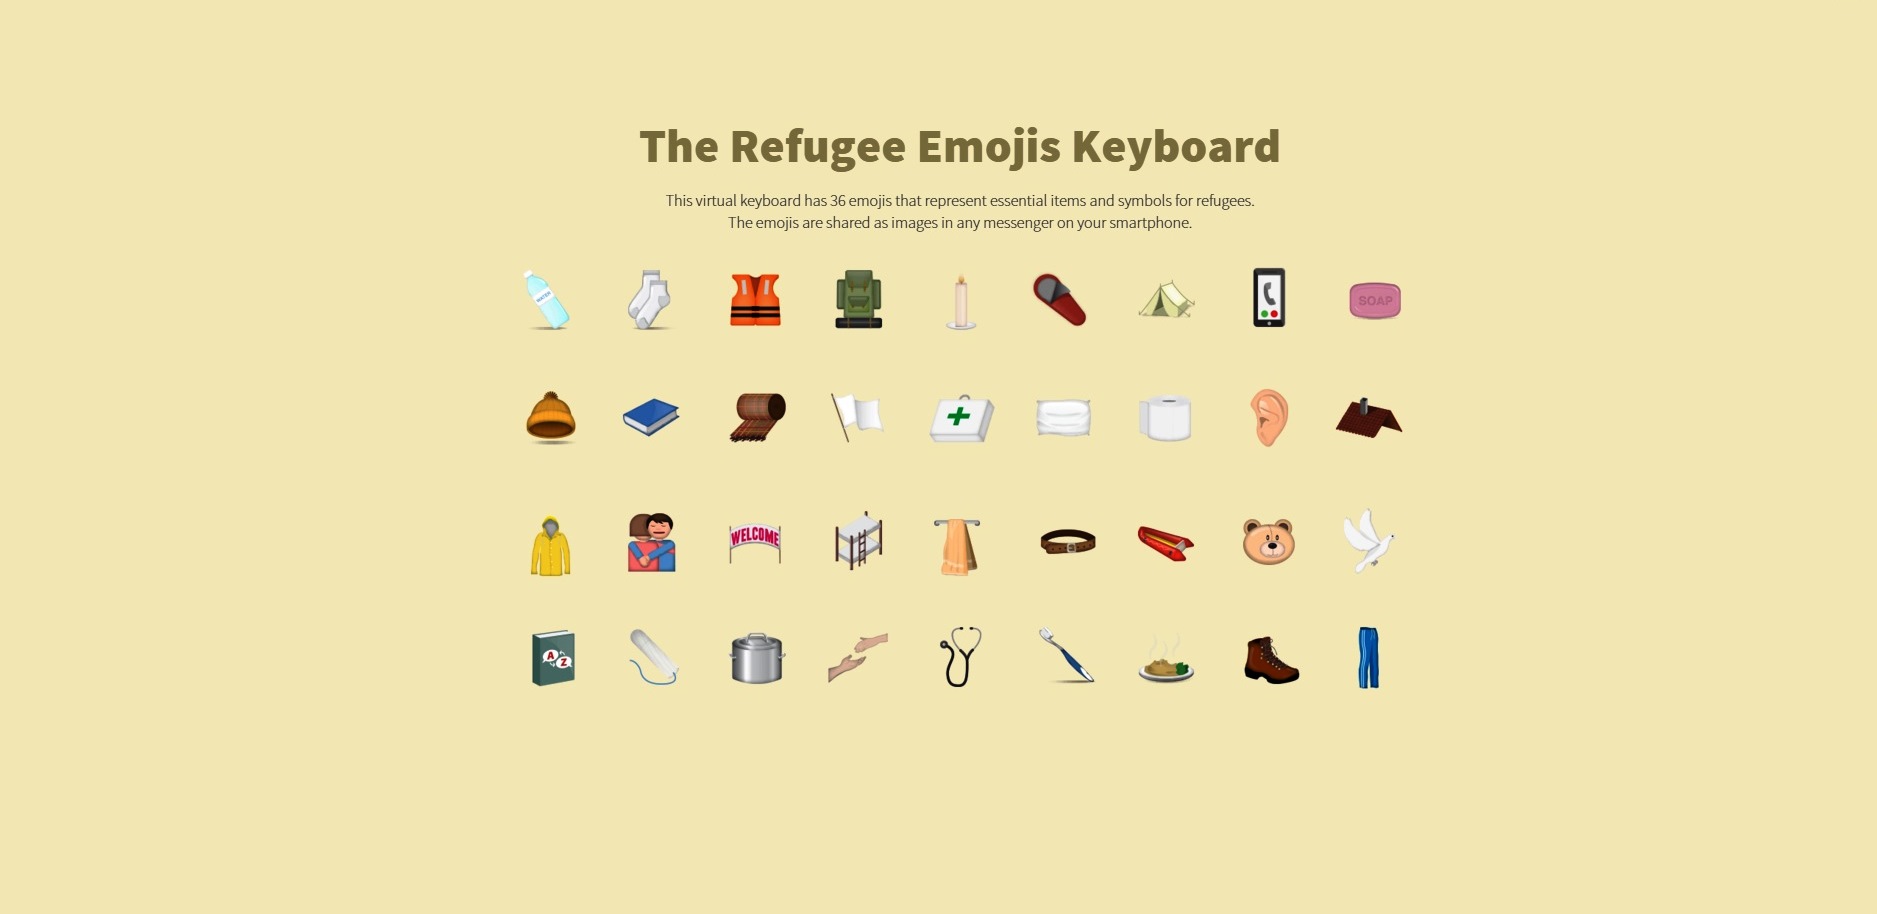 source: Refugee Emojis